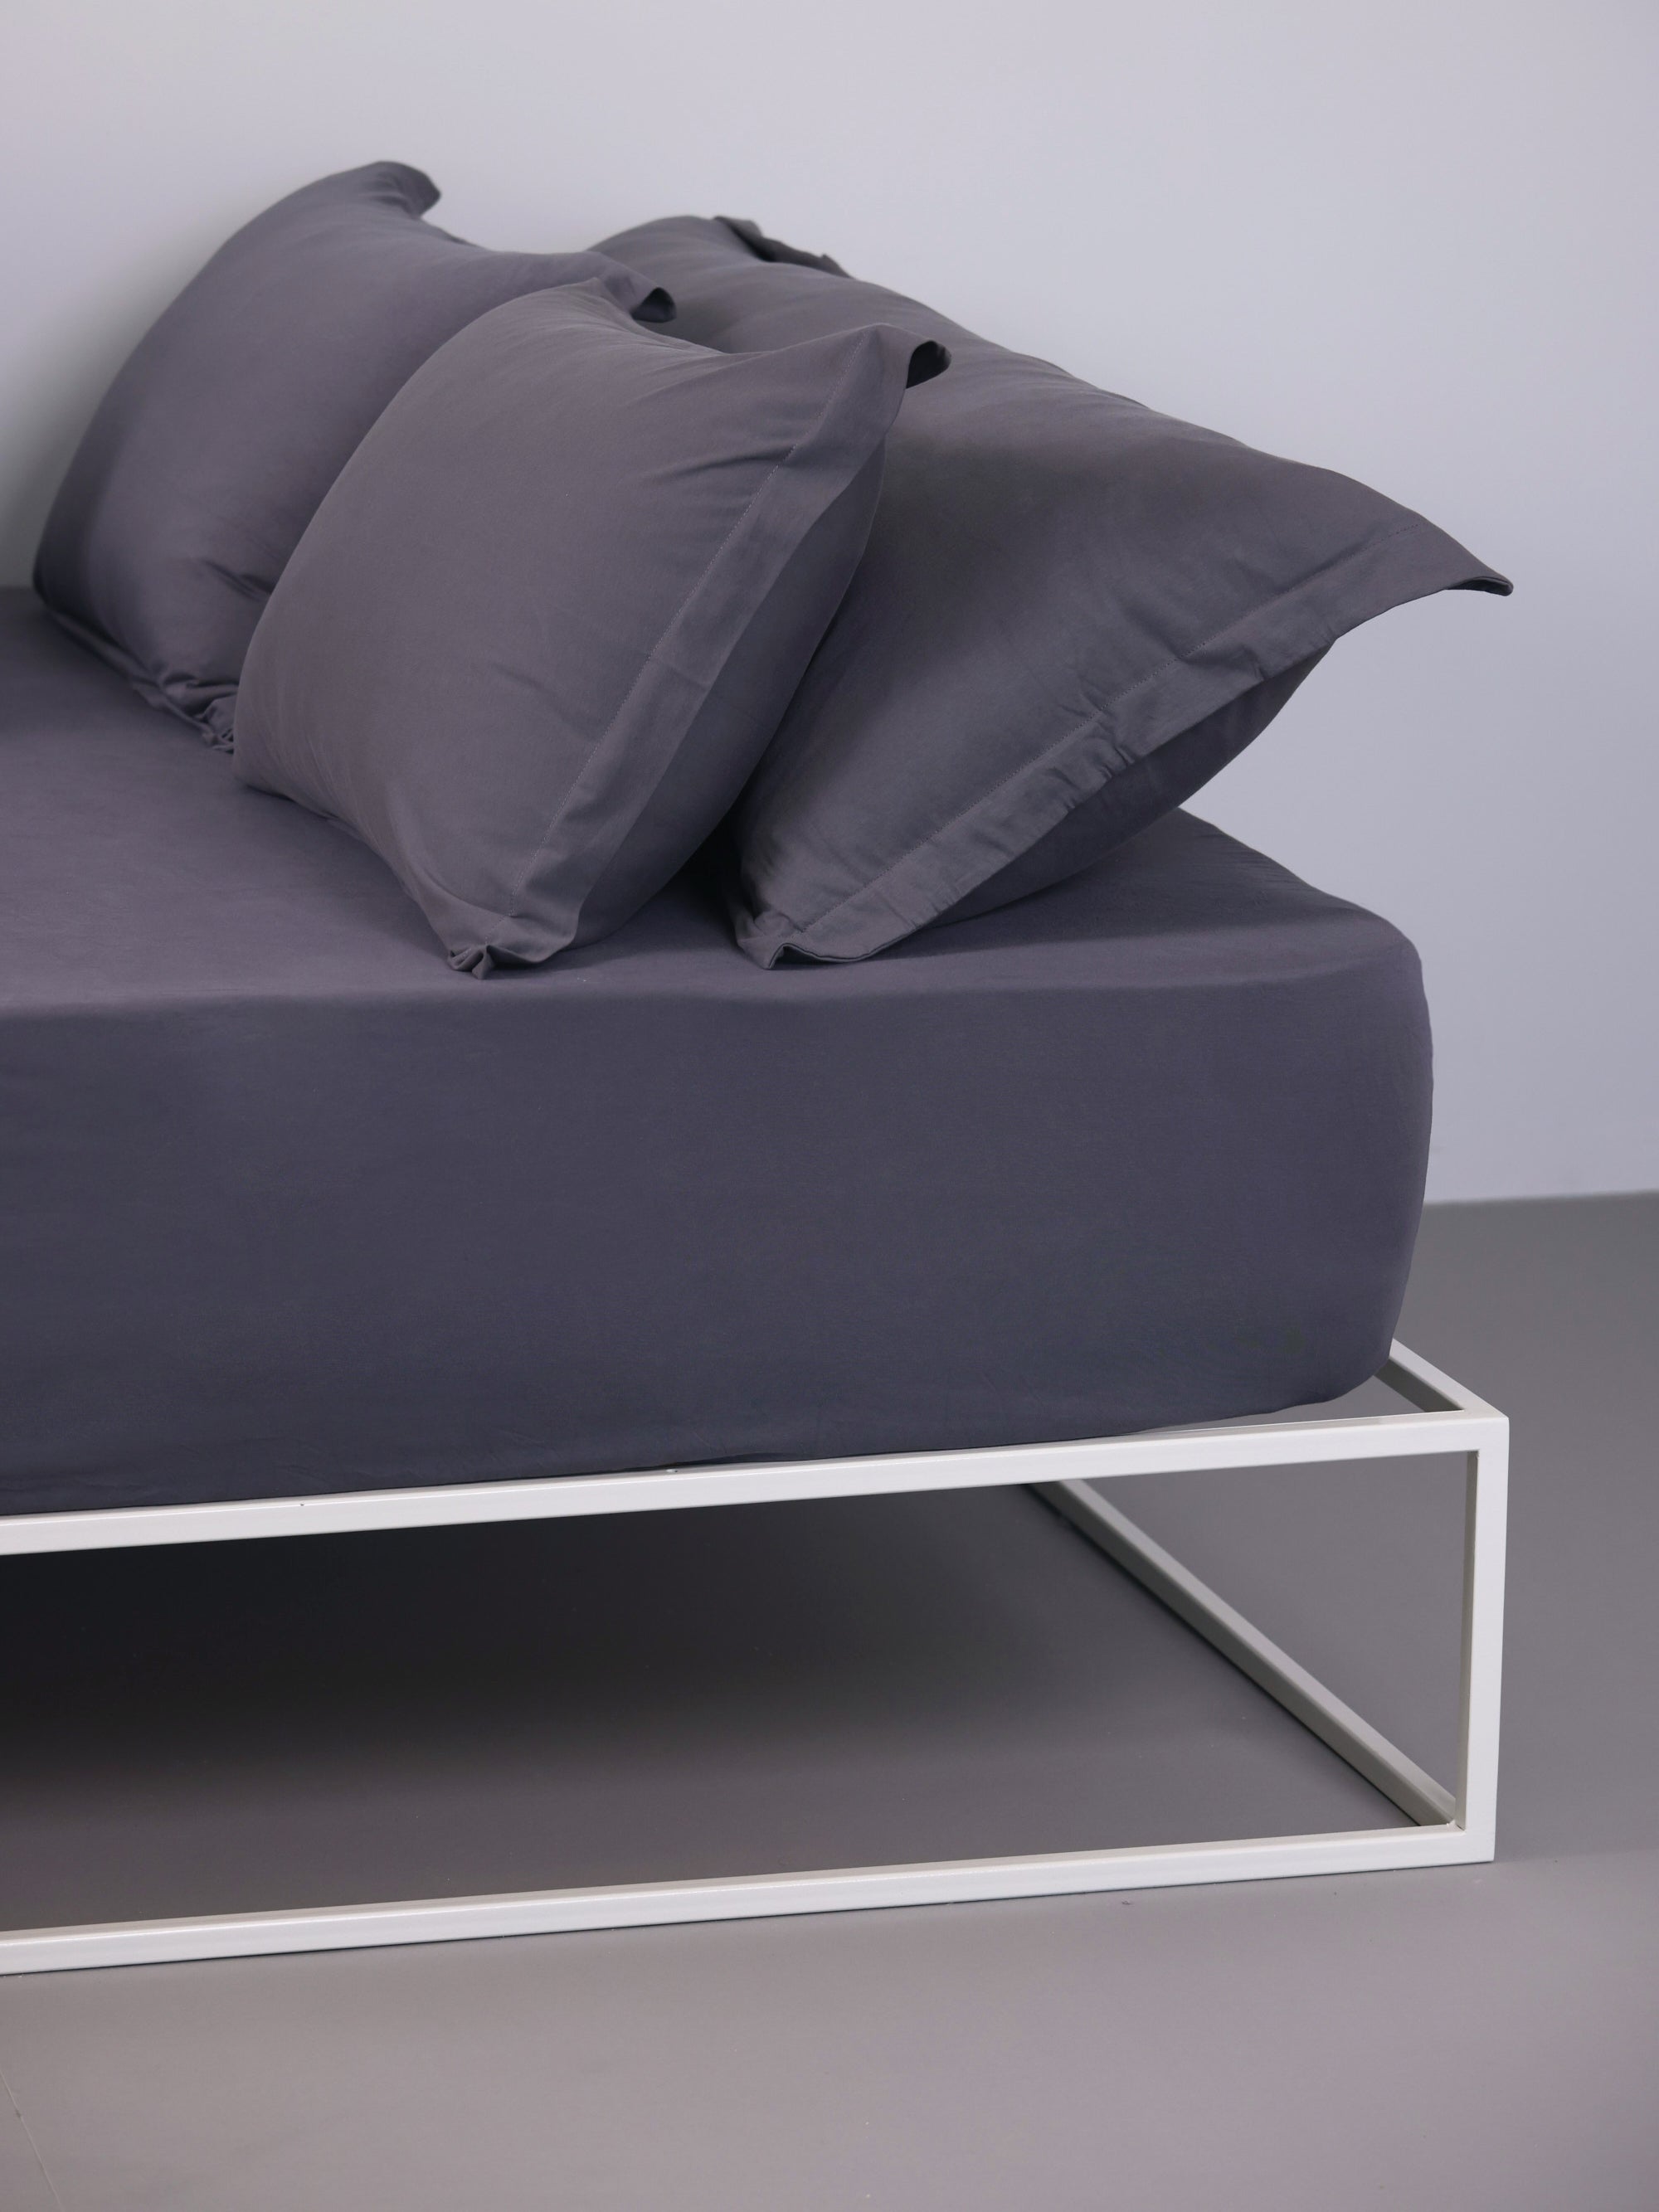 מיטת ברזל לבנה עם סדין, כרית וציפית לכרית ארוכה בצבע גרפיט בחדר עם קירות אפורים